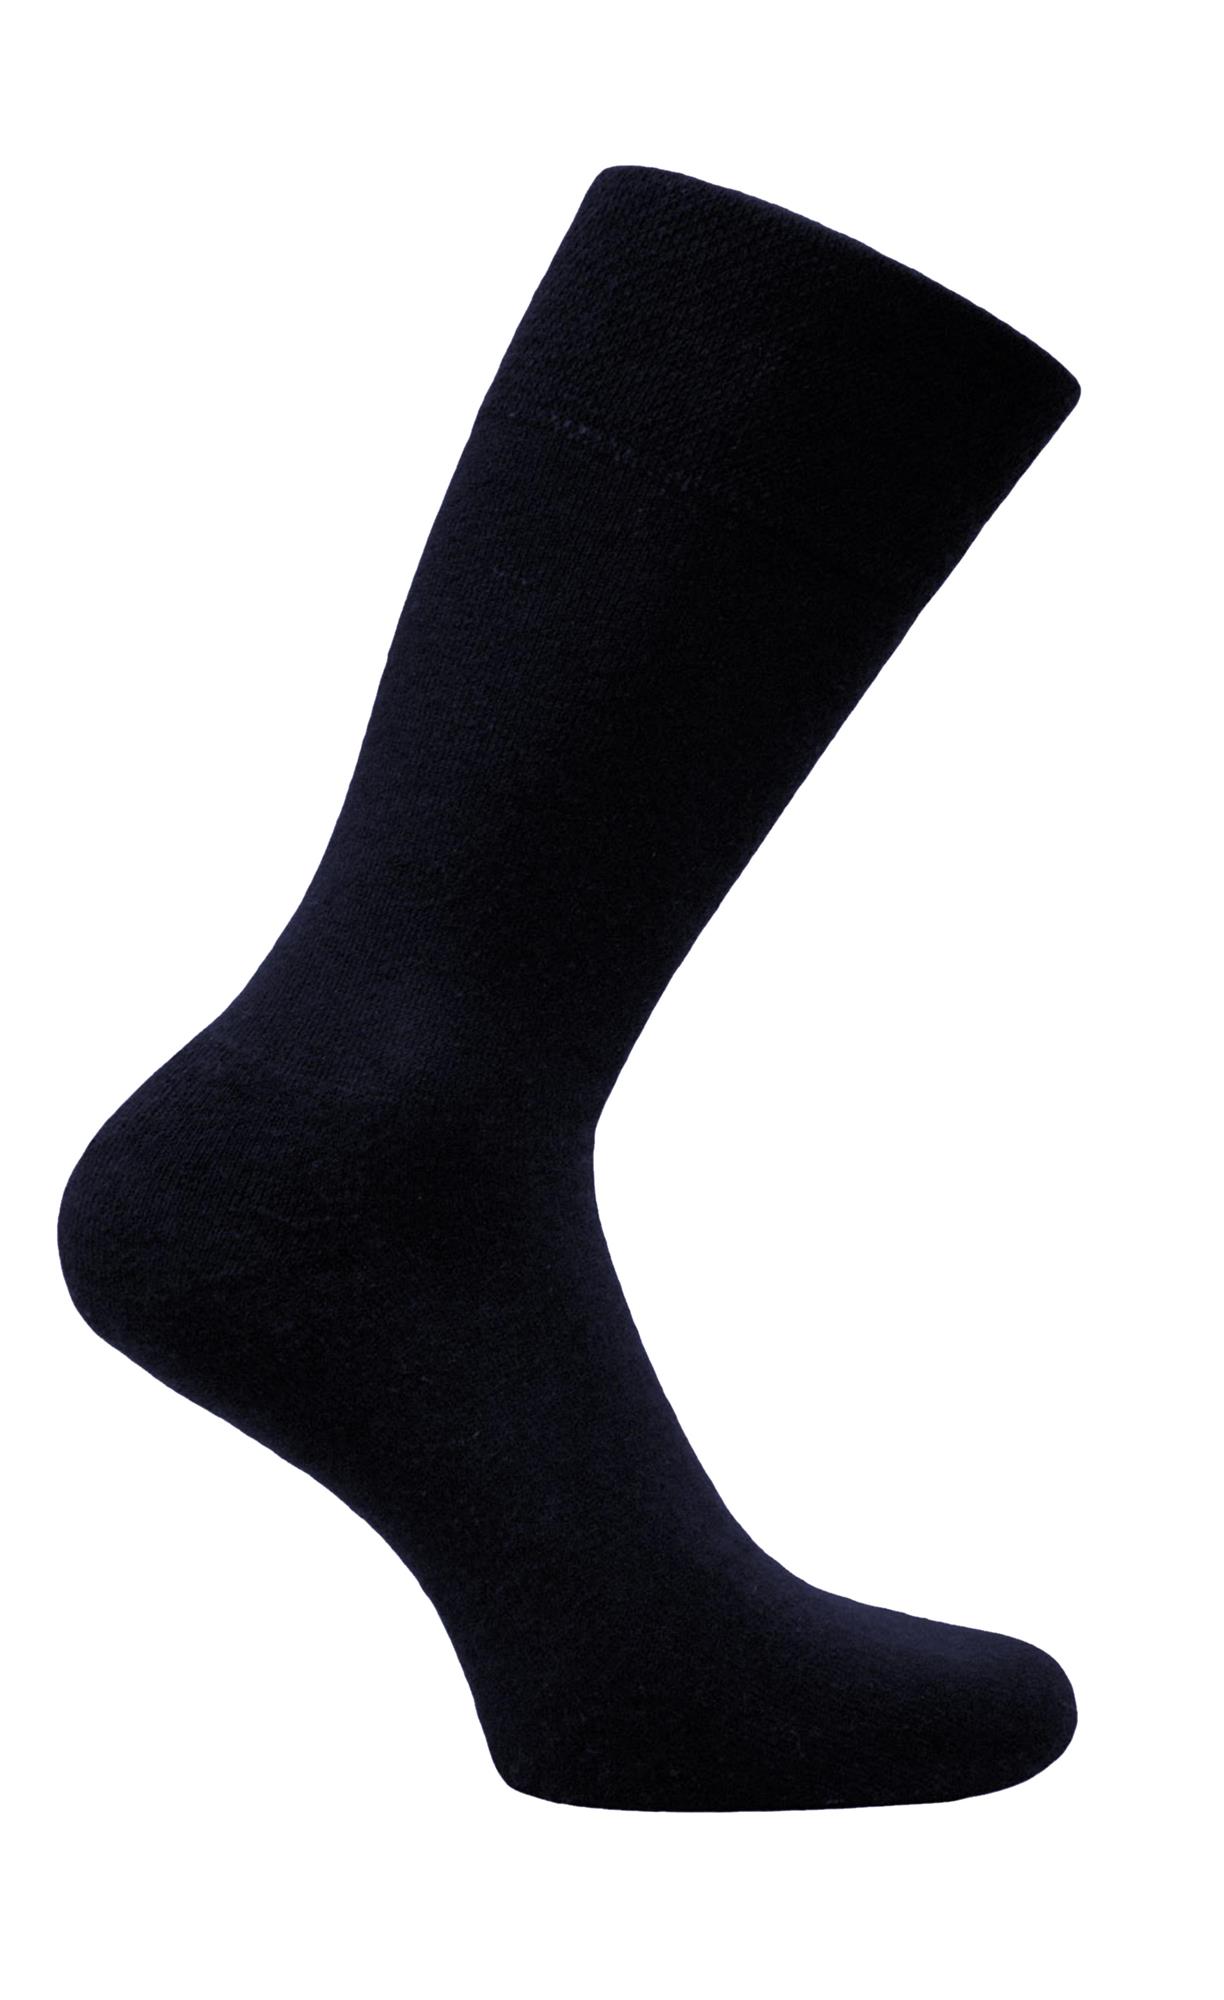 20 Paar Herren Business Socken schwarz 100% Baumwolle ohne Naht handgekettelt 